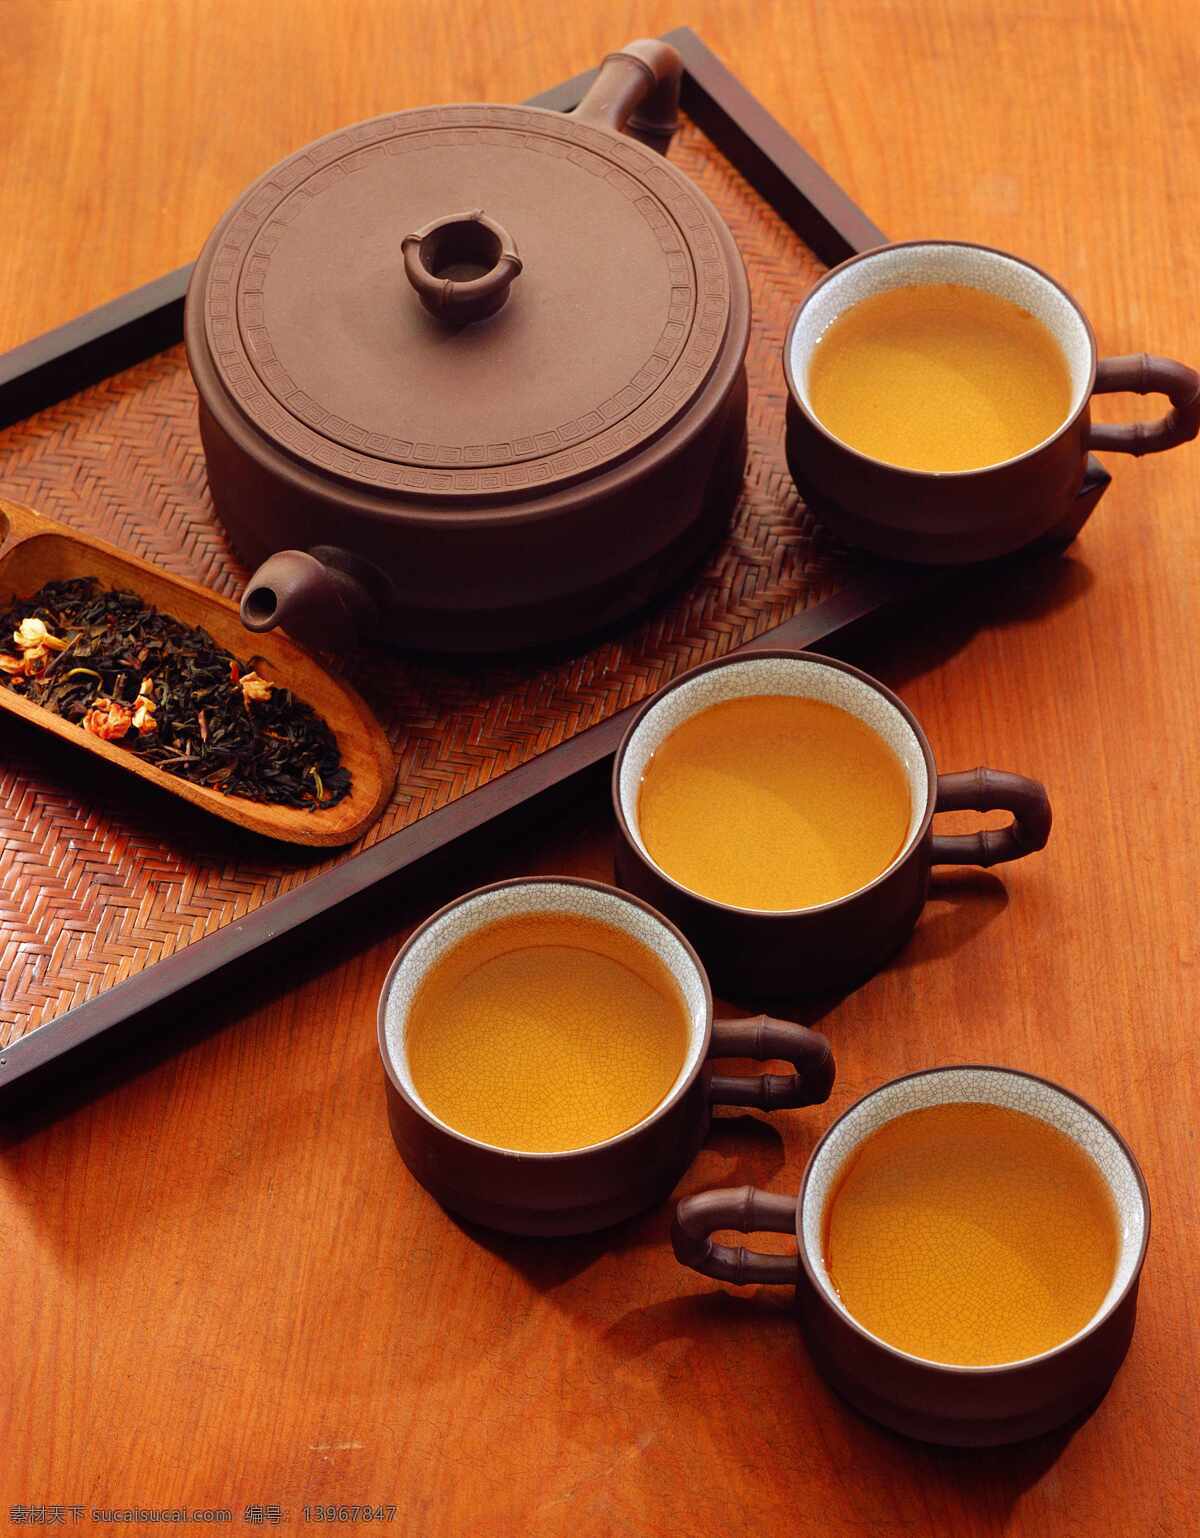 茶具 茶文化 茶 品材 茶碗 陶瓷 器具 喝茶 茶道 中国风 古典 文化 家庭用品 餐饮美食 餐具厨具